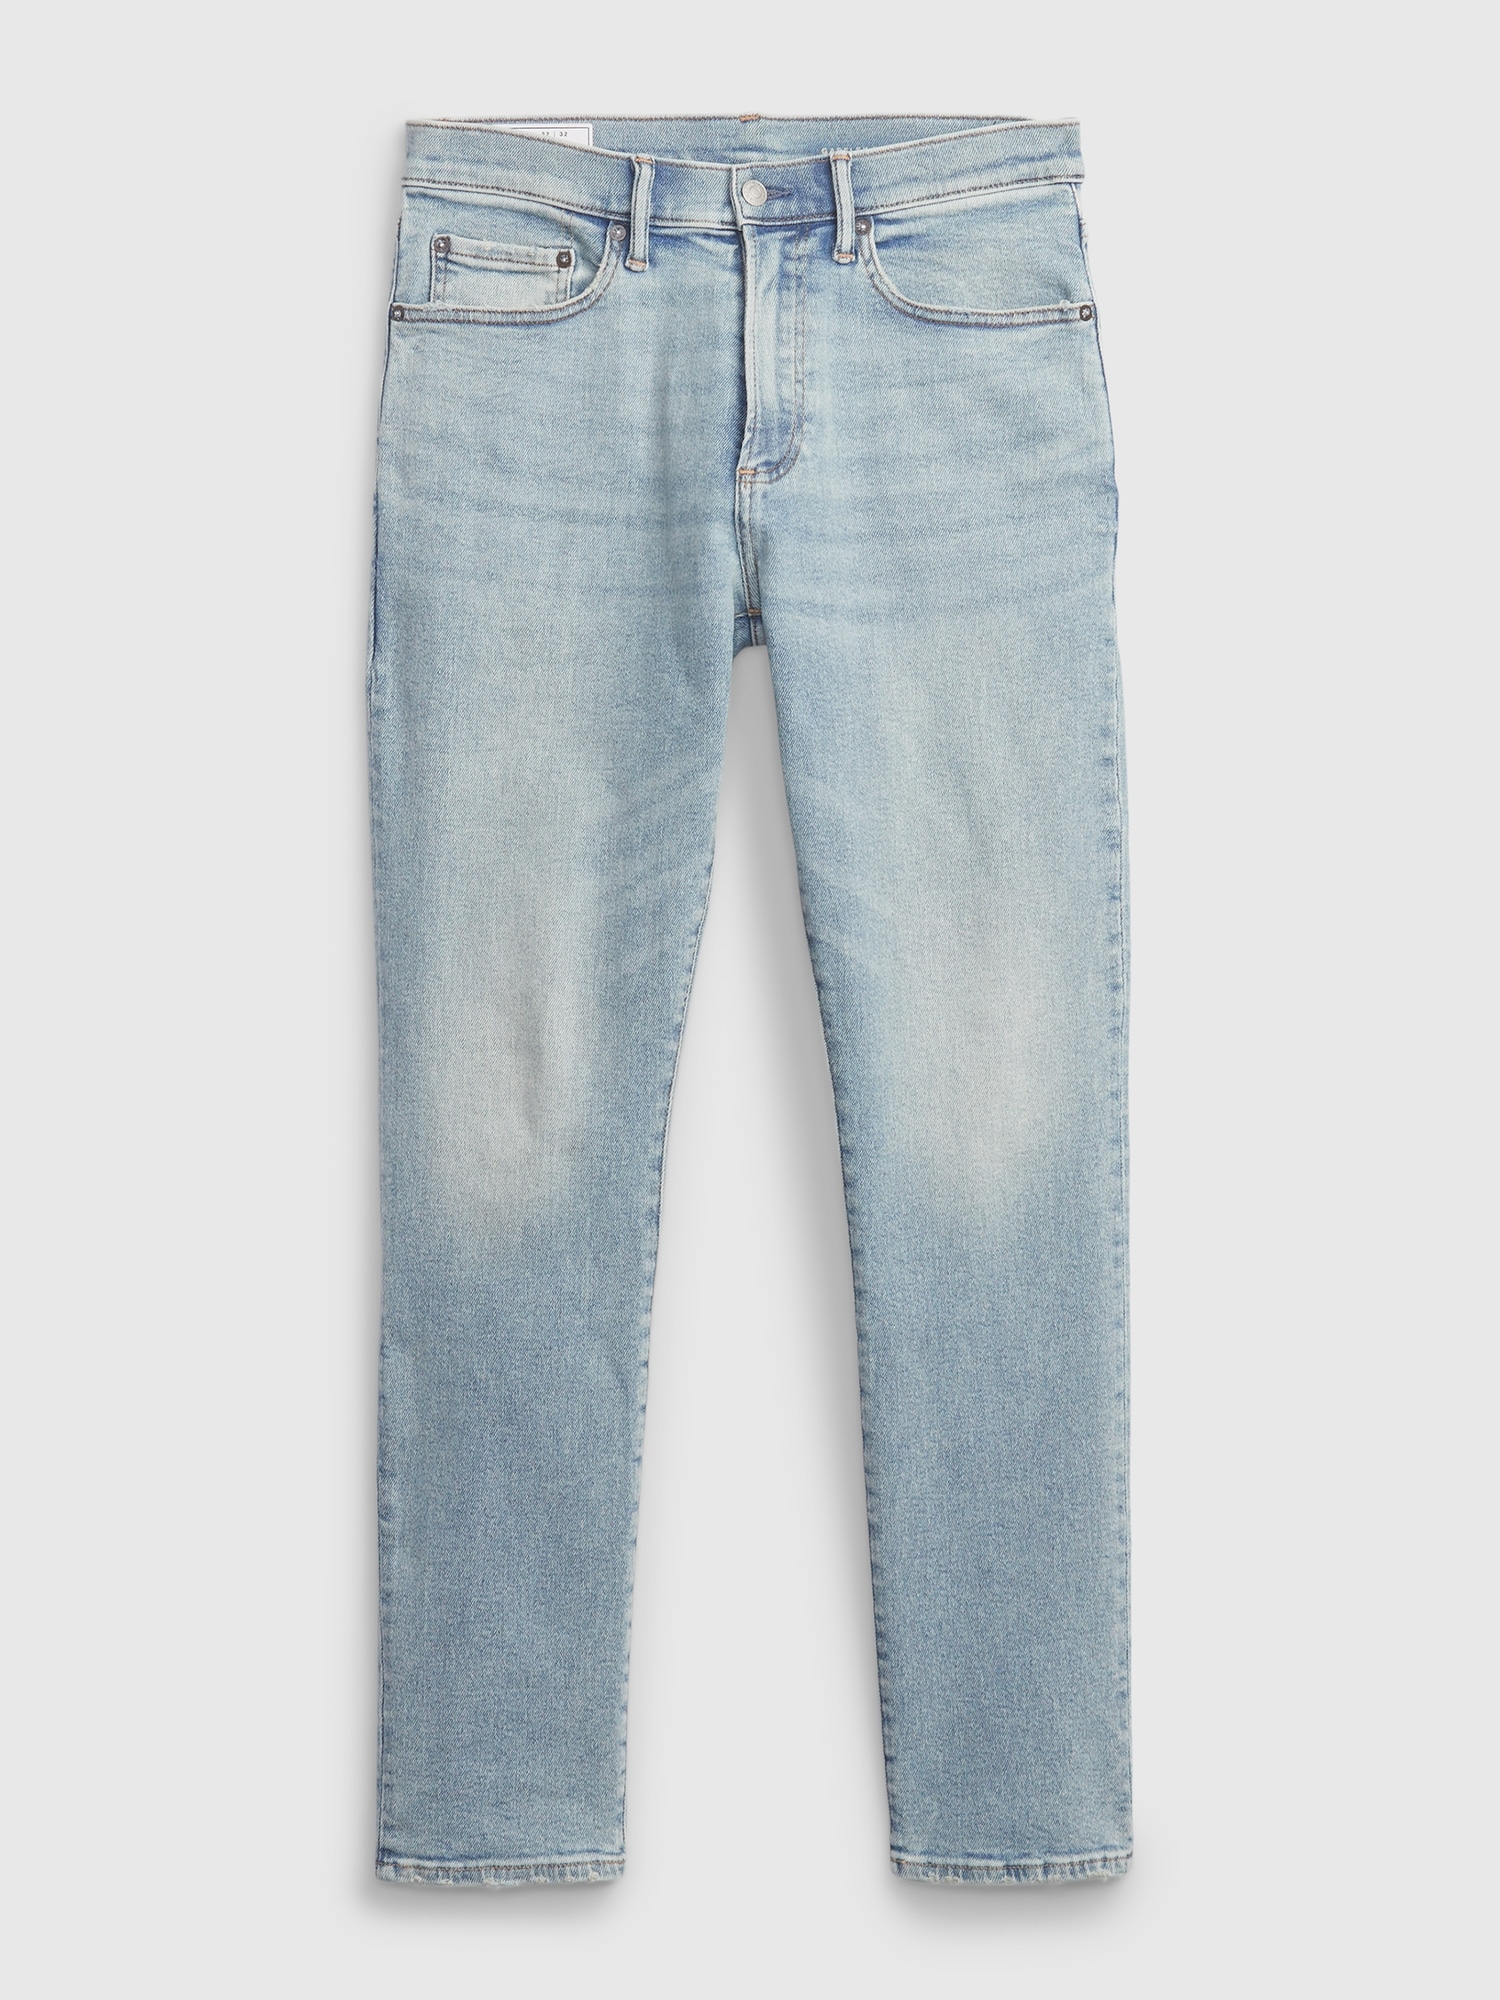 Skinny Jeans in GapFlex